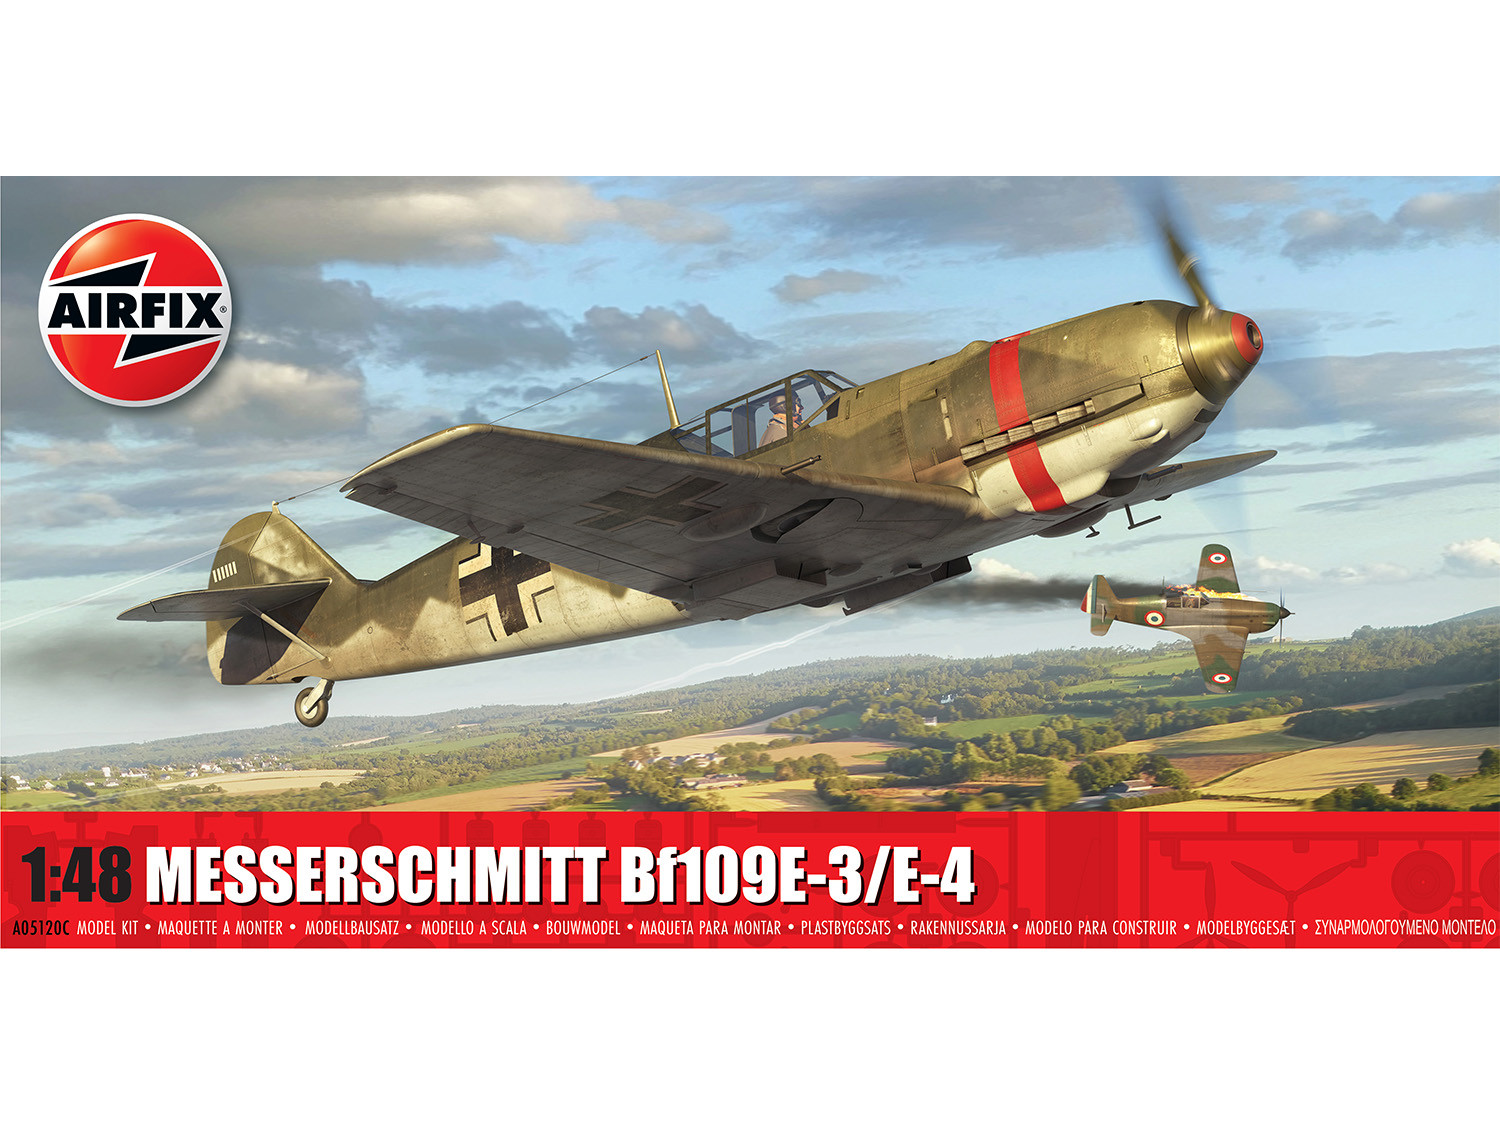 *German Messerschmitt Bf109E-3/E-4 (1:48 Scale)